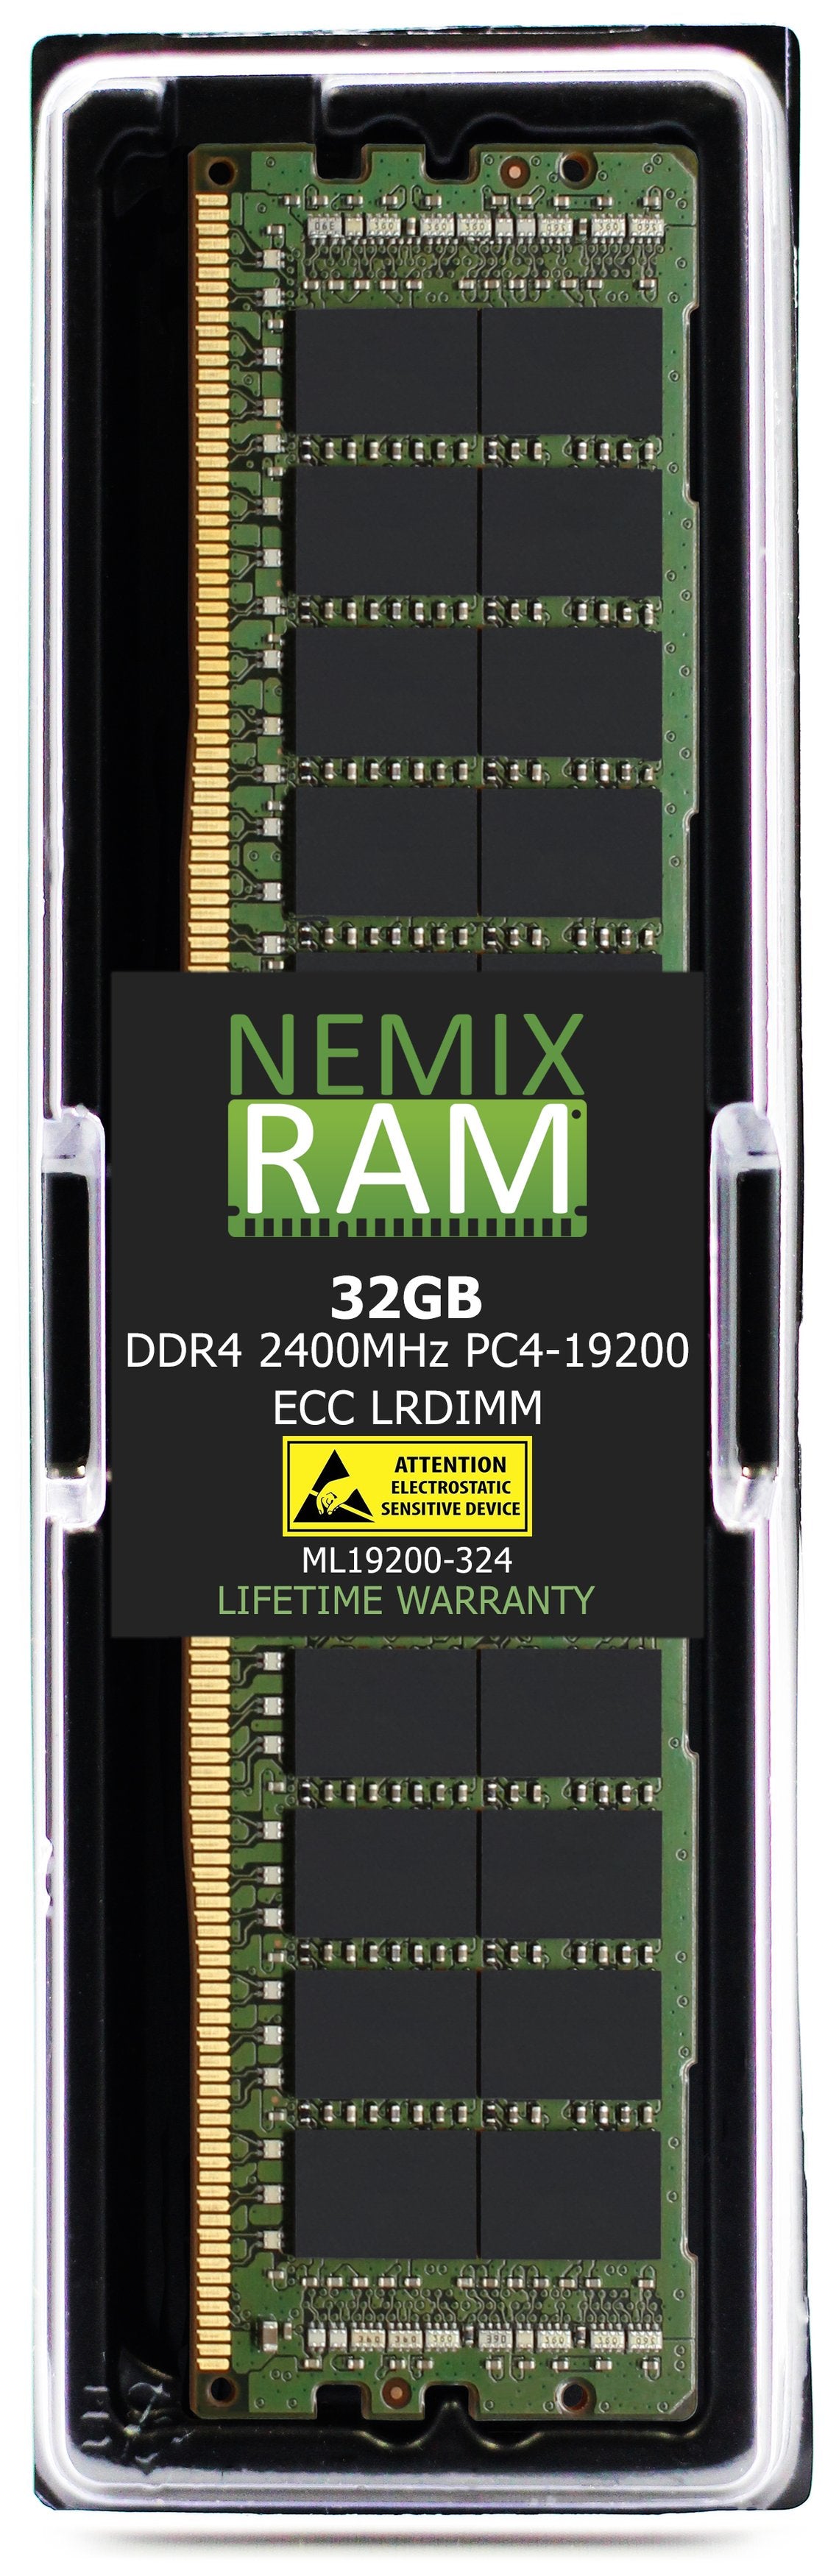 32GB DDR4 2400MHZ PC4-19200 LRDIMM Compatible with Supermicro MEM-DR432L-CL02-LR24